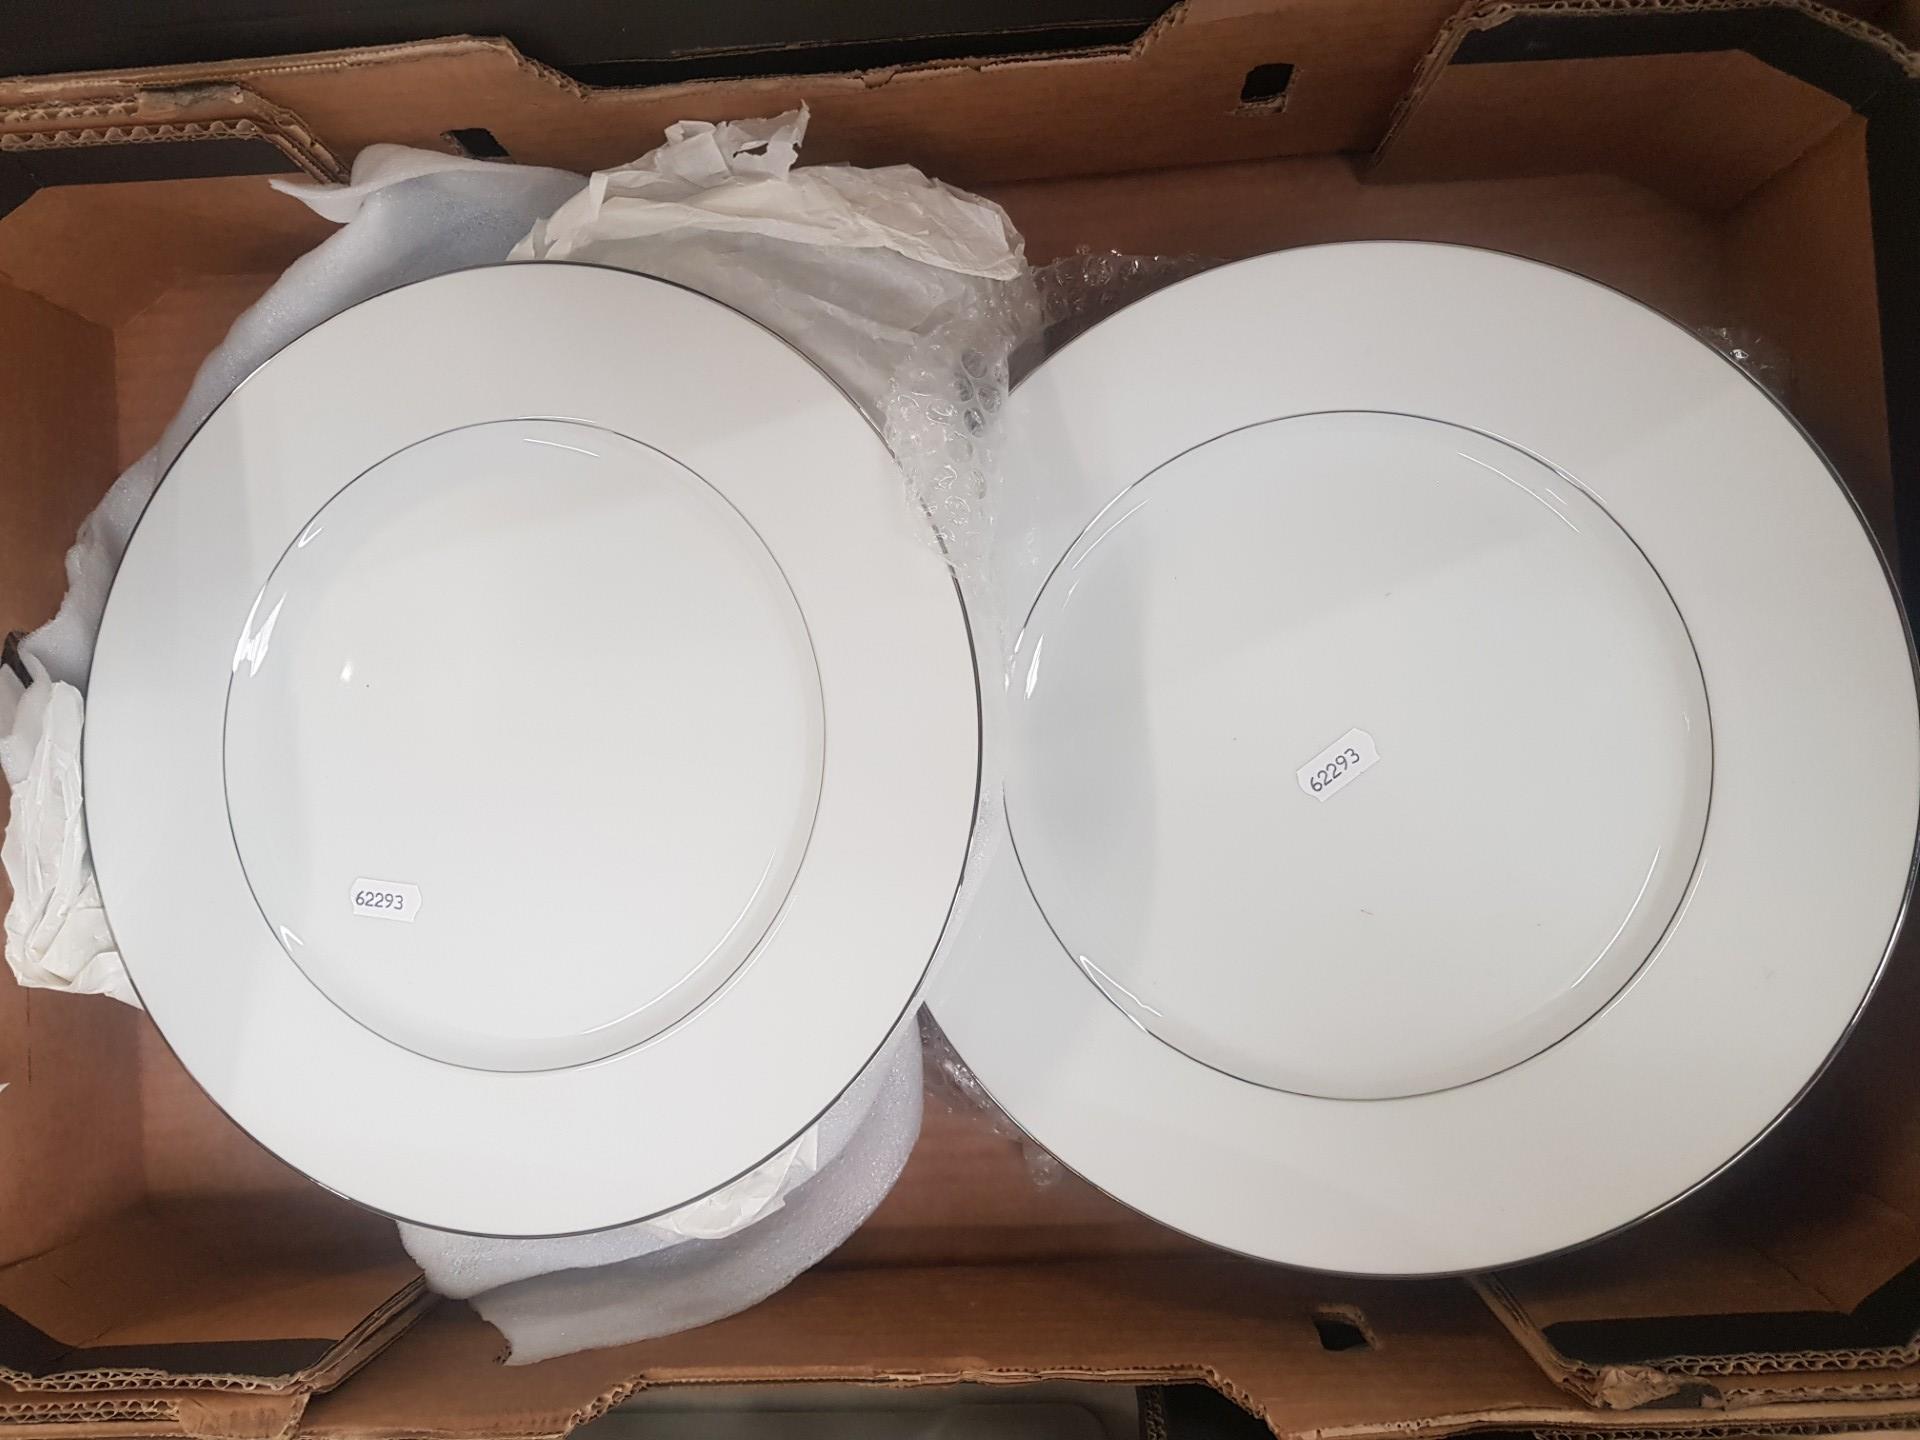 Eight Harrods platinum dinner plates, diameter 30cm